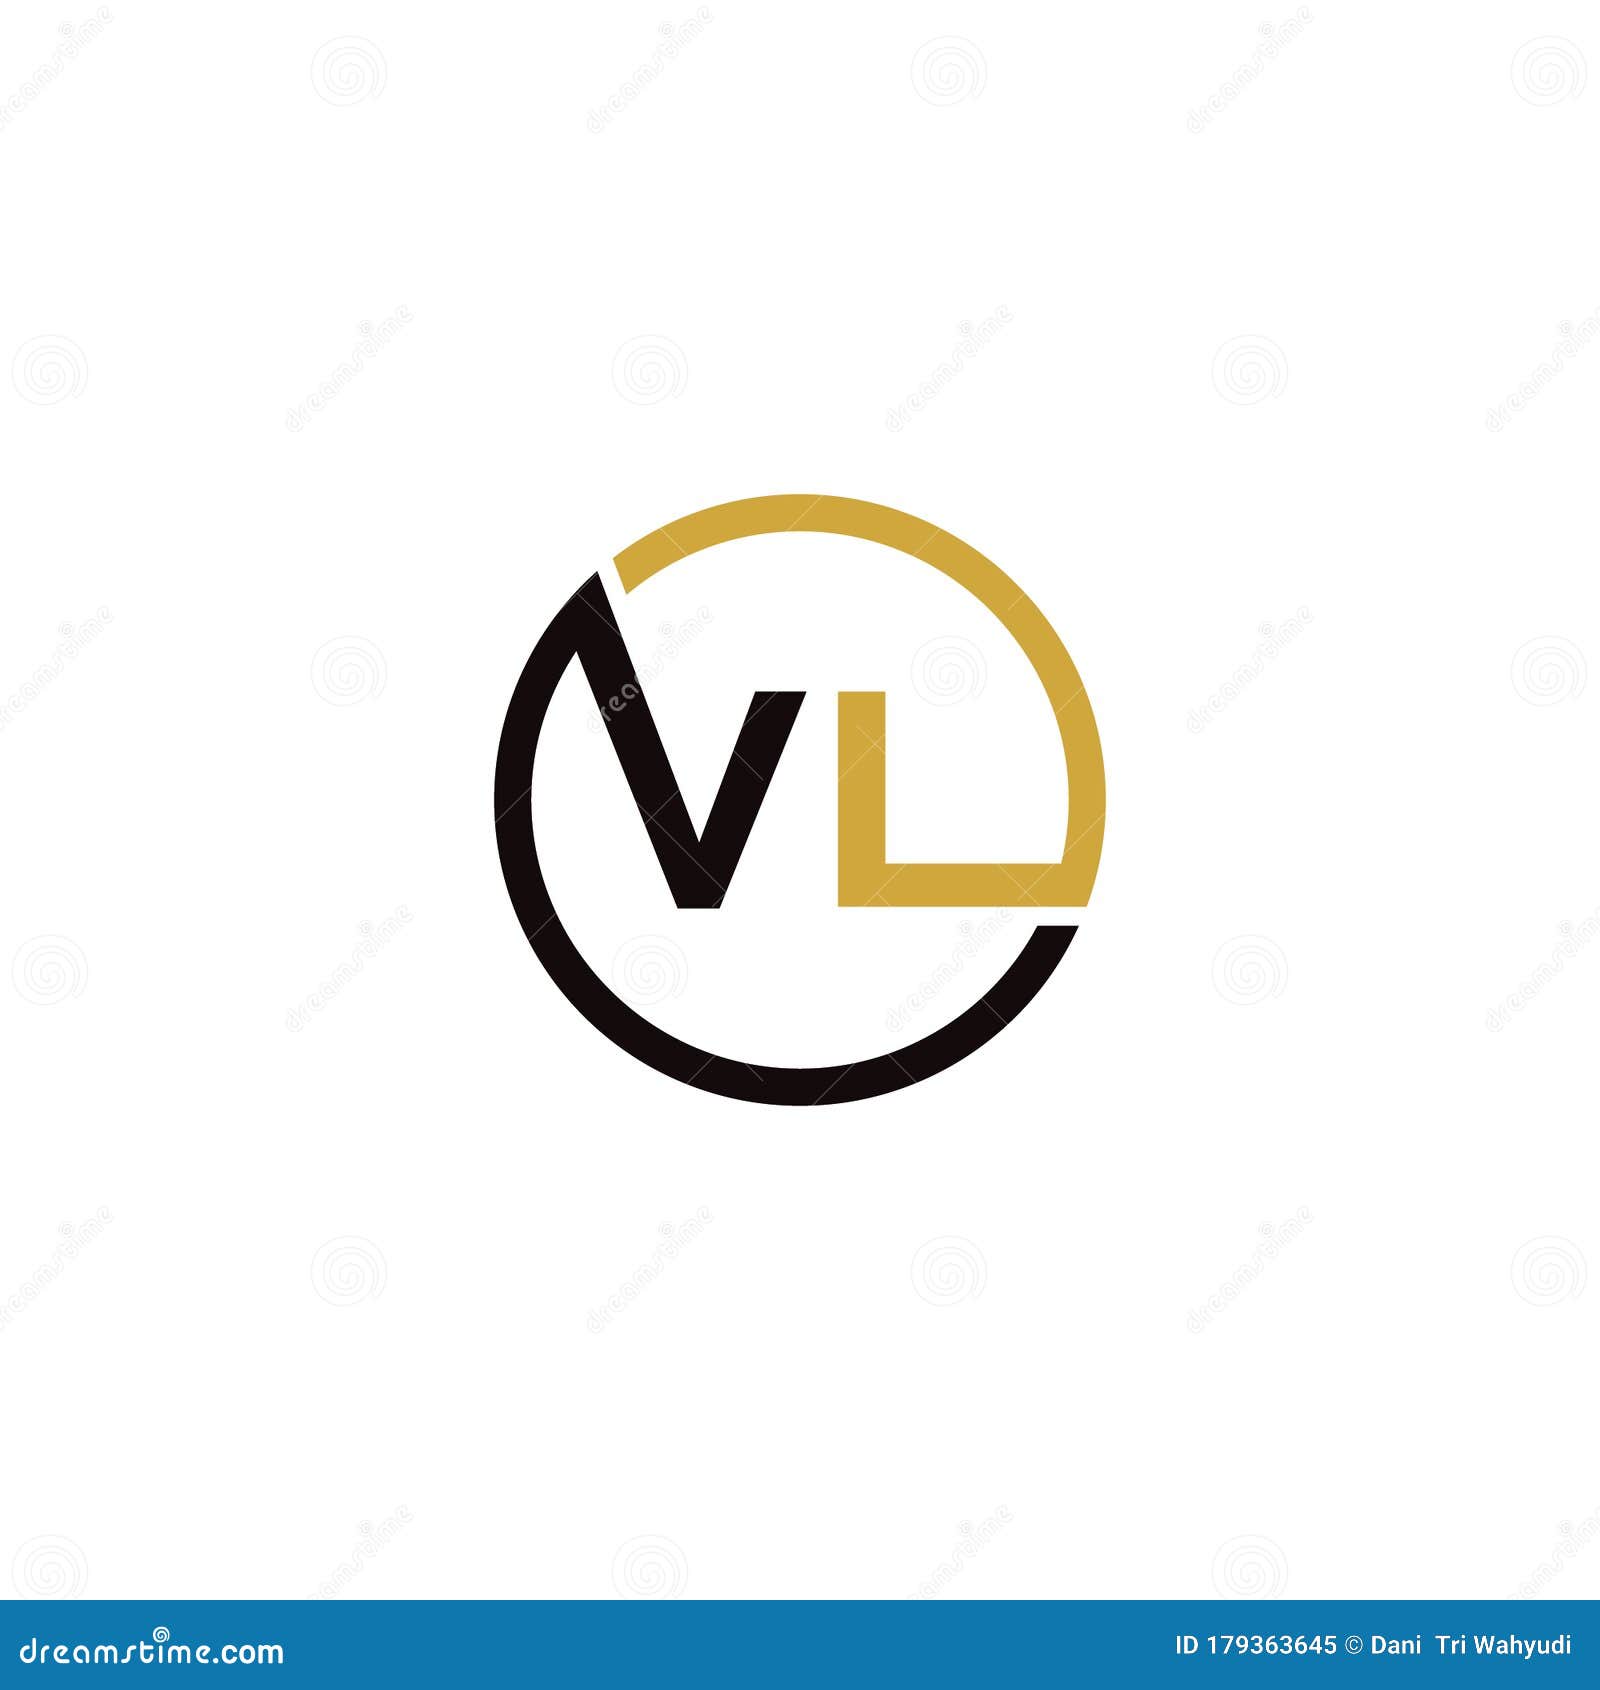 Vl Letter Logo Stock Illustrations – 768 Vl Letter Logo Stock